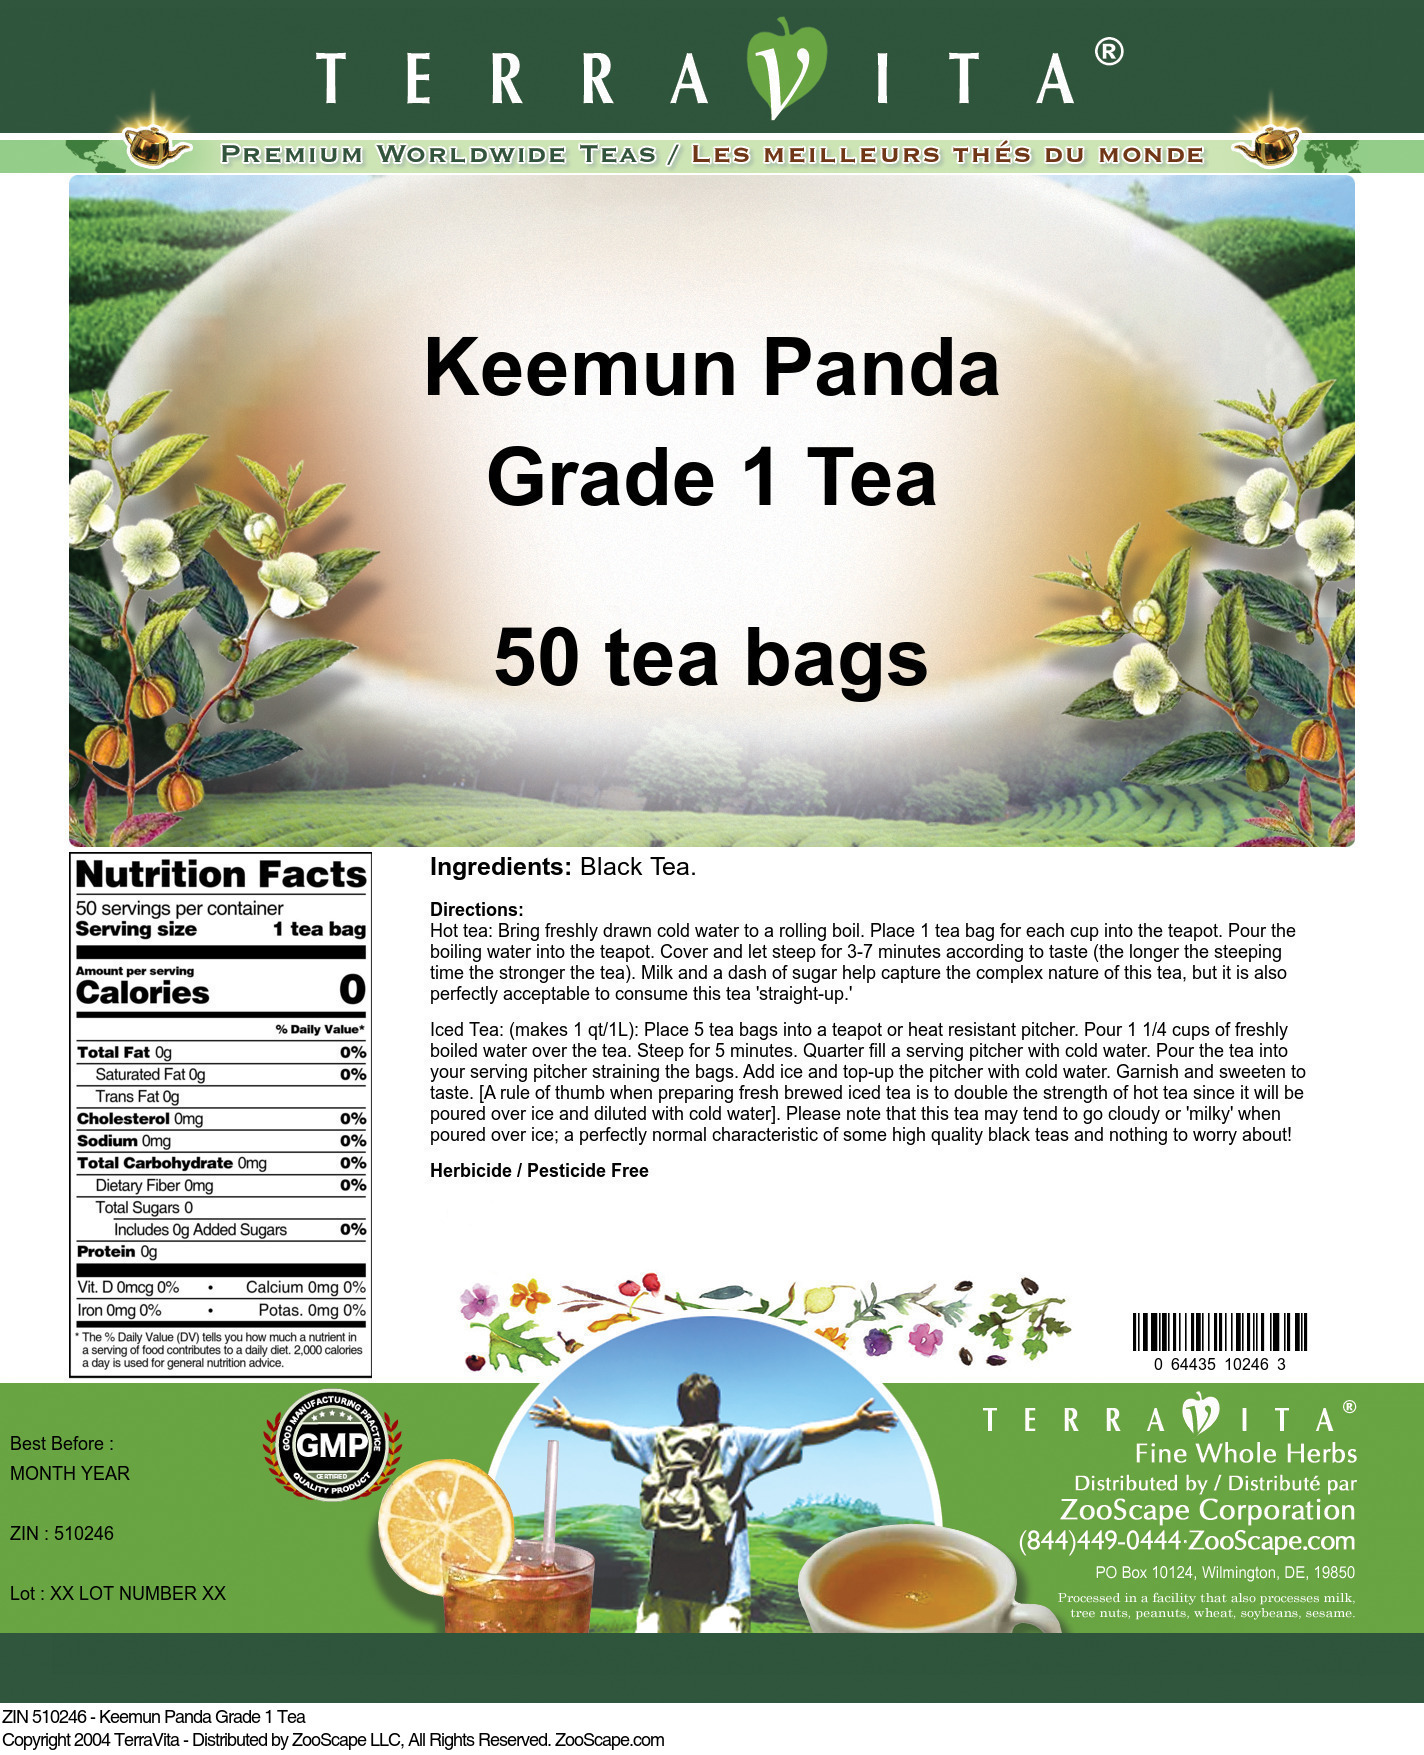 Keemun Panda Grade 1 Tea - Label